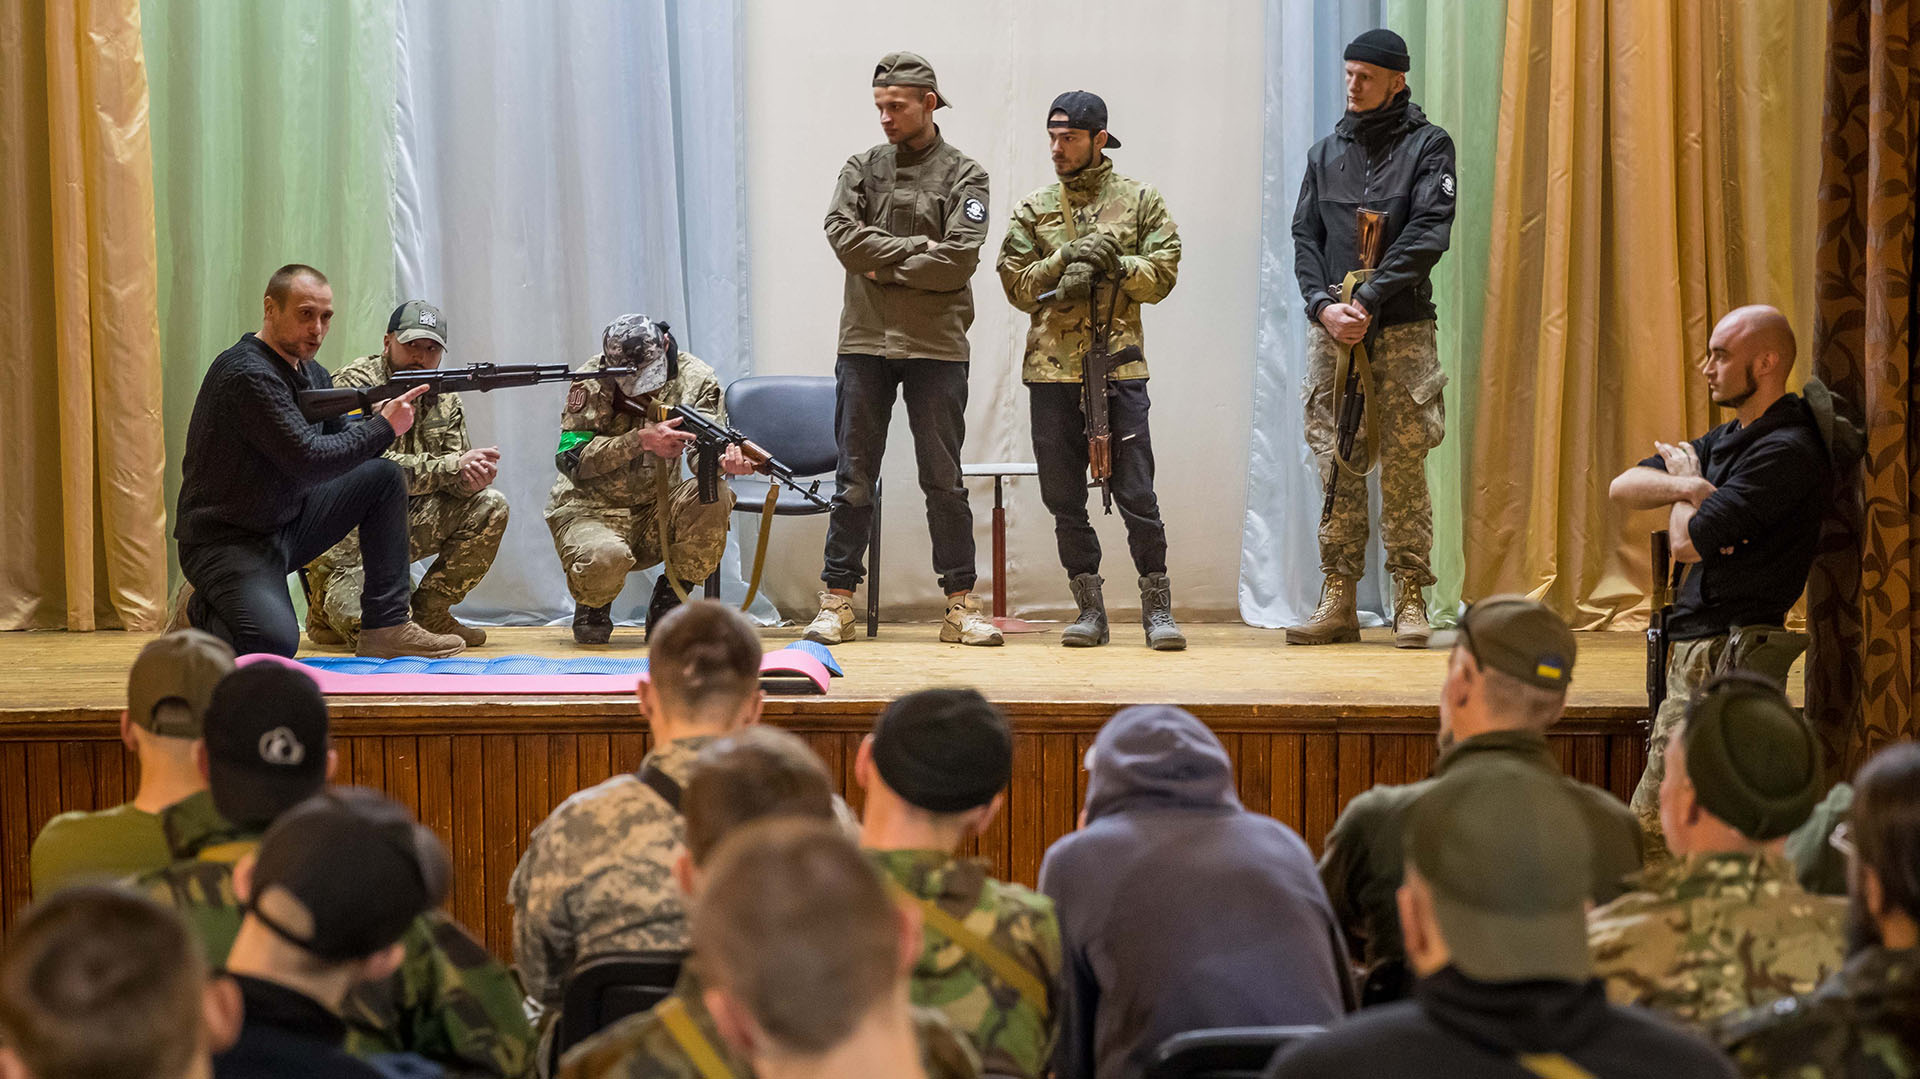 Un veterano de guerra que les enseña a manejar una AK-47, a cómo tomar aire antes de disparar o a qué hacer al entrar en combate dentro de un edificio. EFE/ Miguel Gutiérrez
